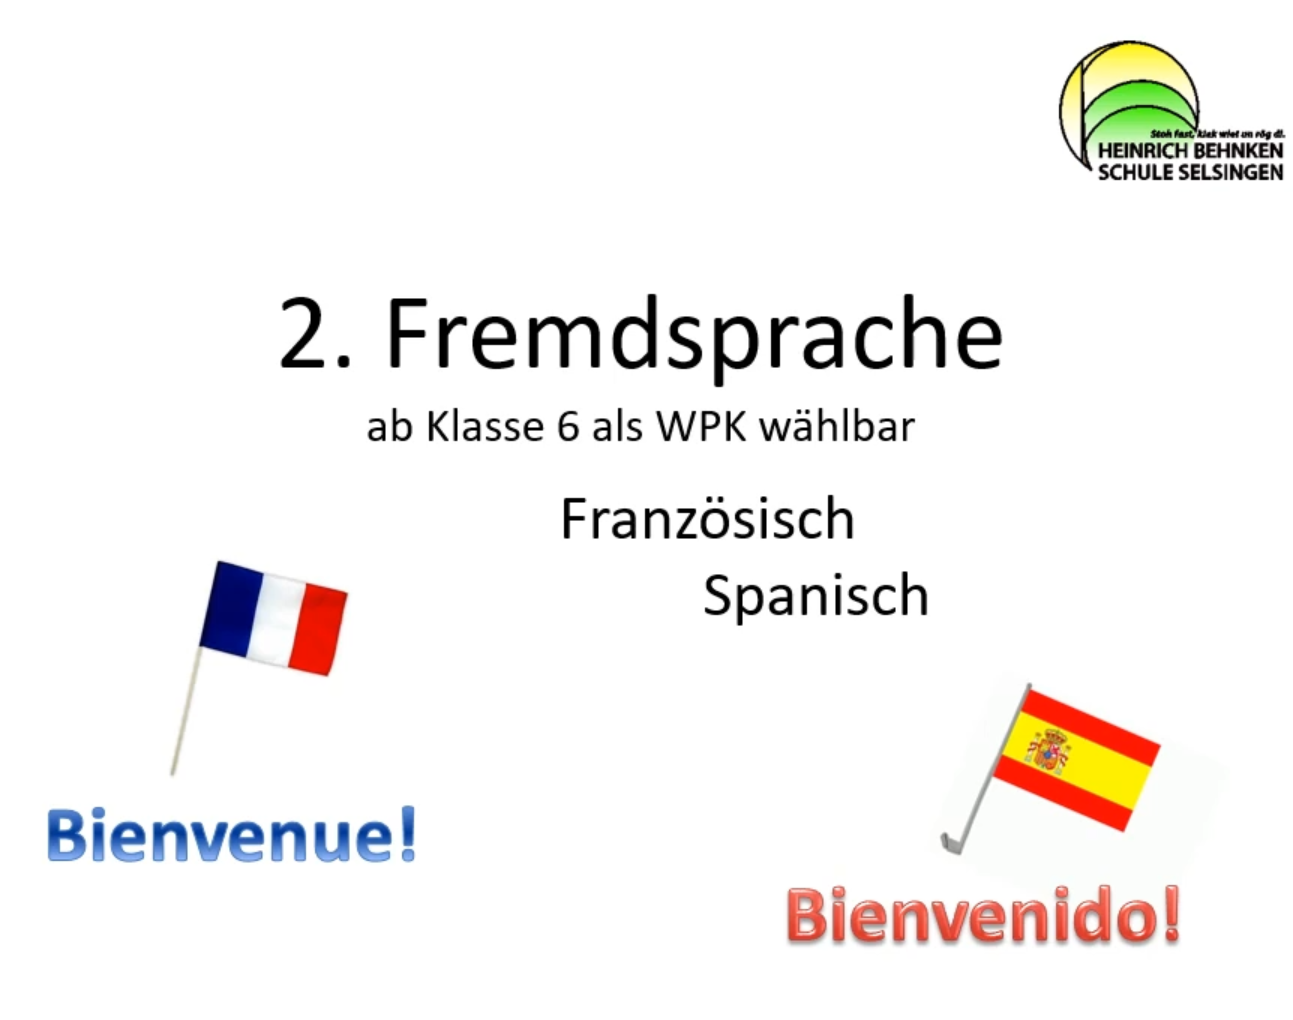 Fremdsprachen kannst du auch bei uns lernen!